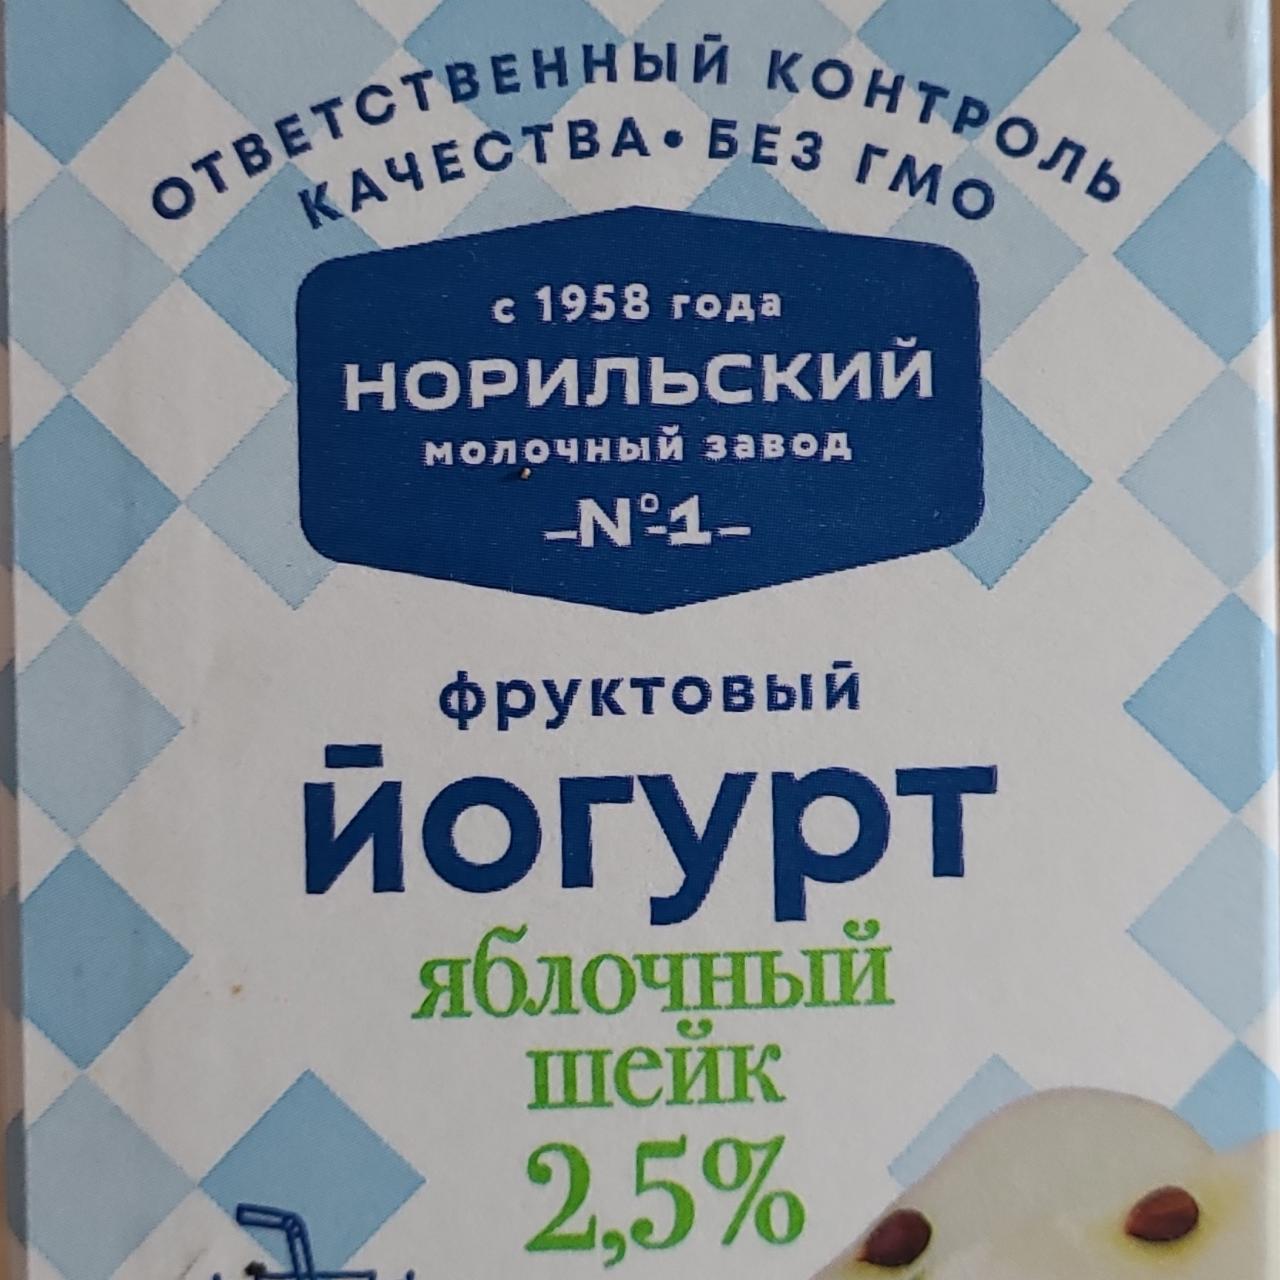 Фото - Фруктовый йогурт яблочный шейк 2.5% Норильский молочный завод